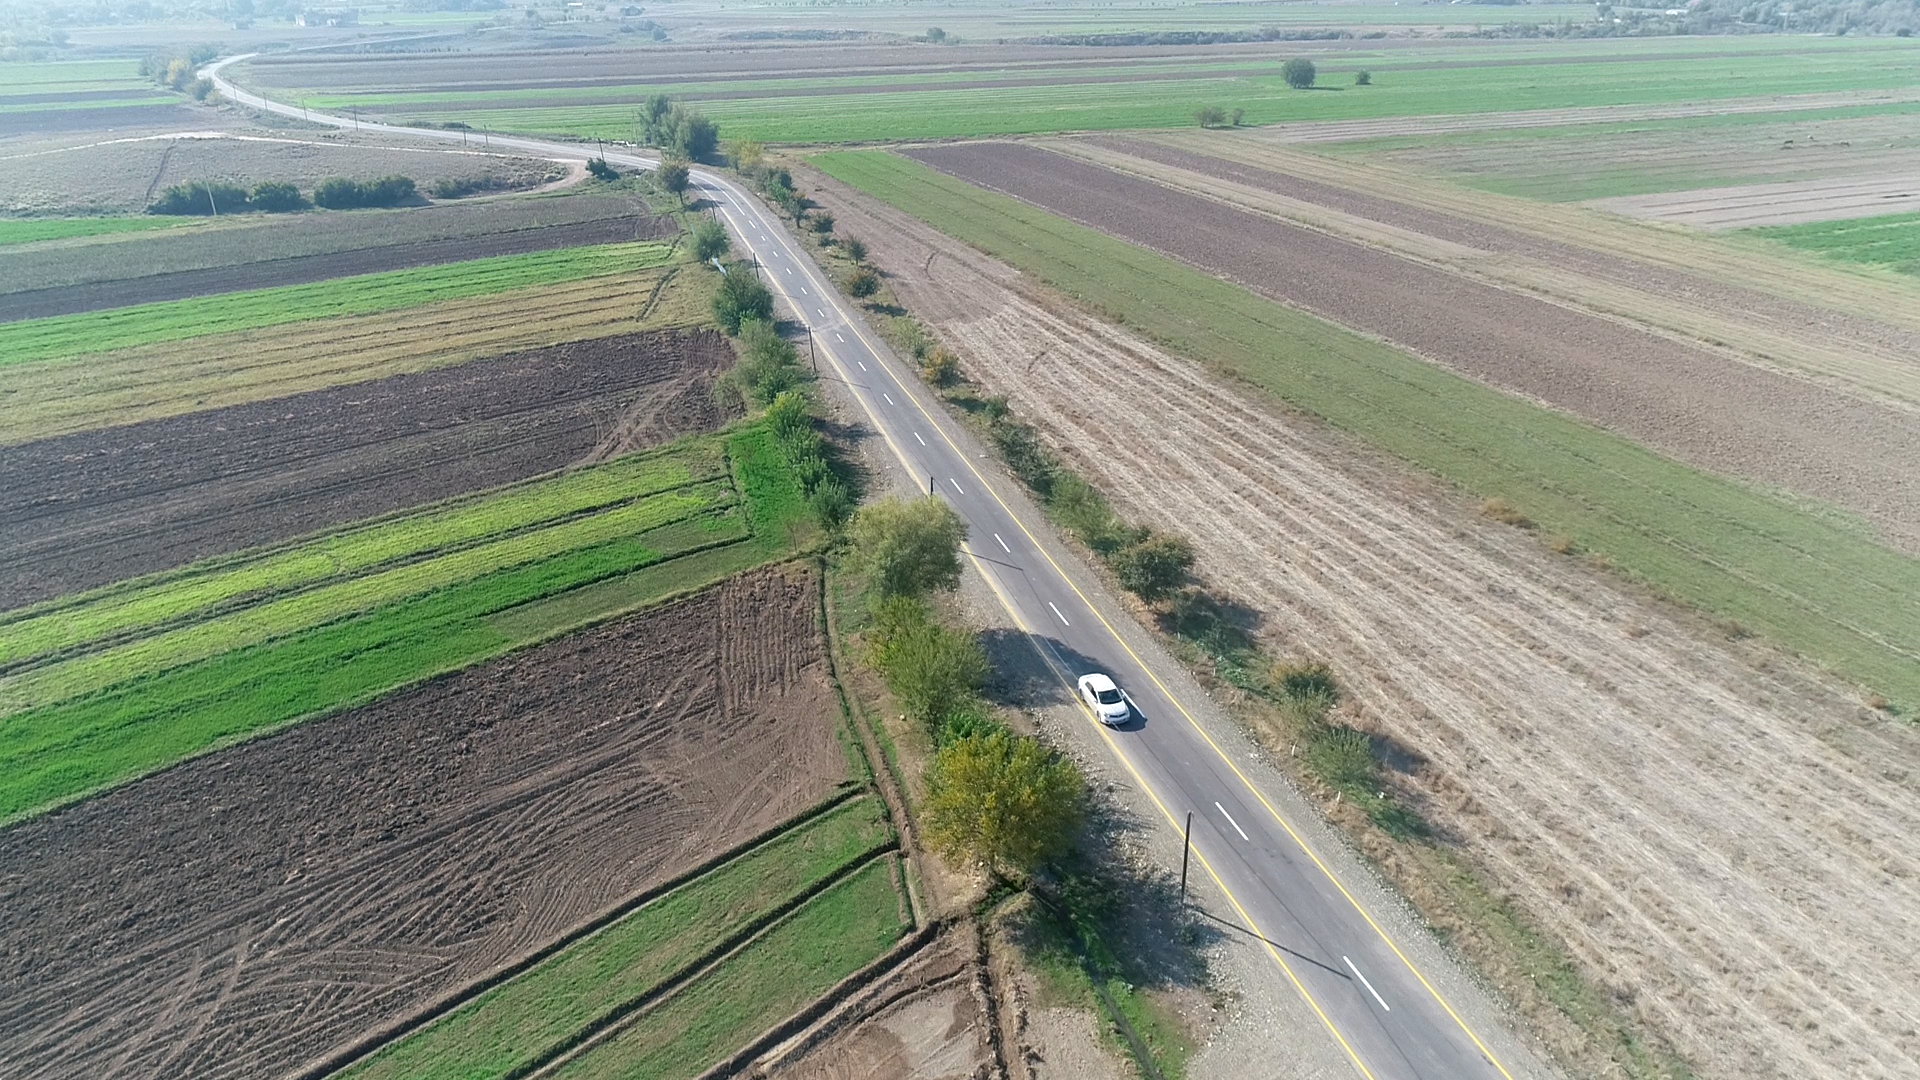 11 Ağcabədidə 18 km uzunluğunda yerli əhəmiyyətli yol yenidən qurulub